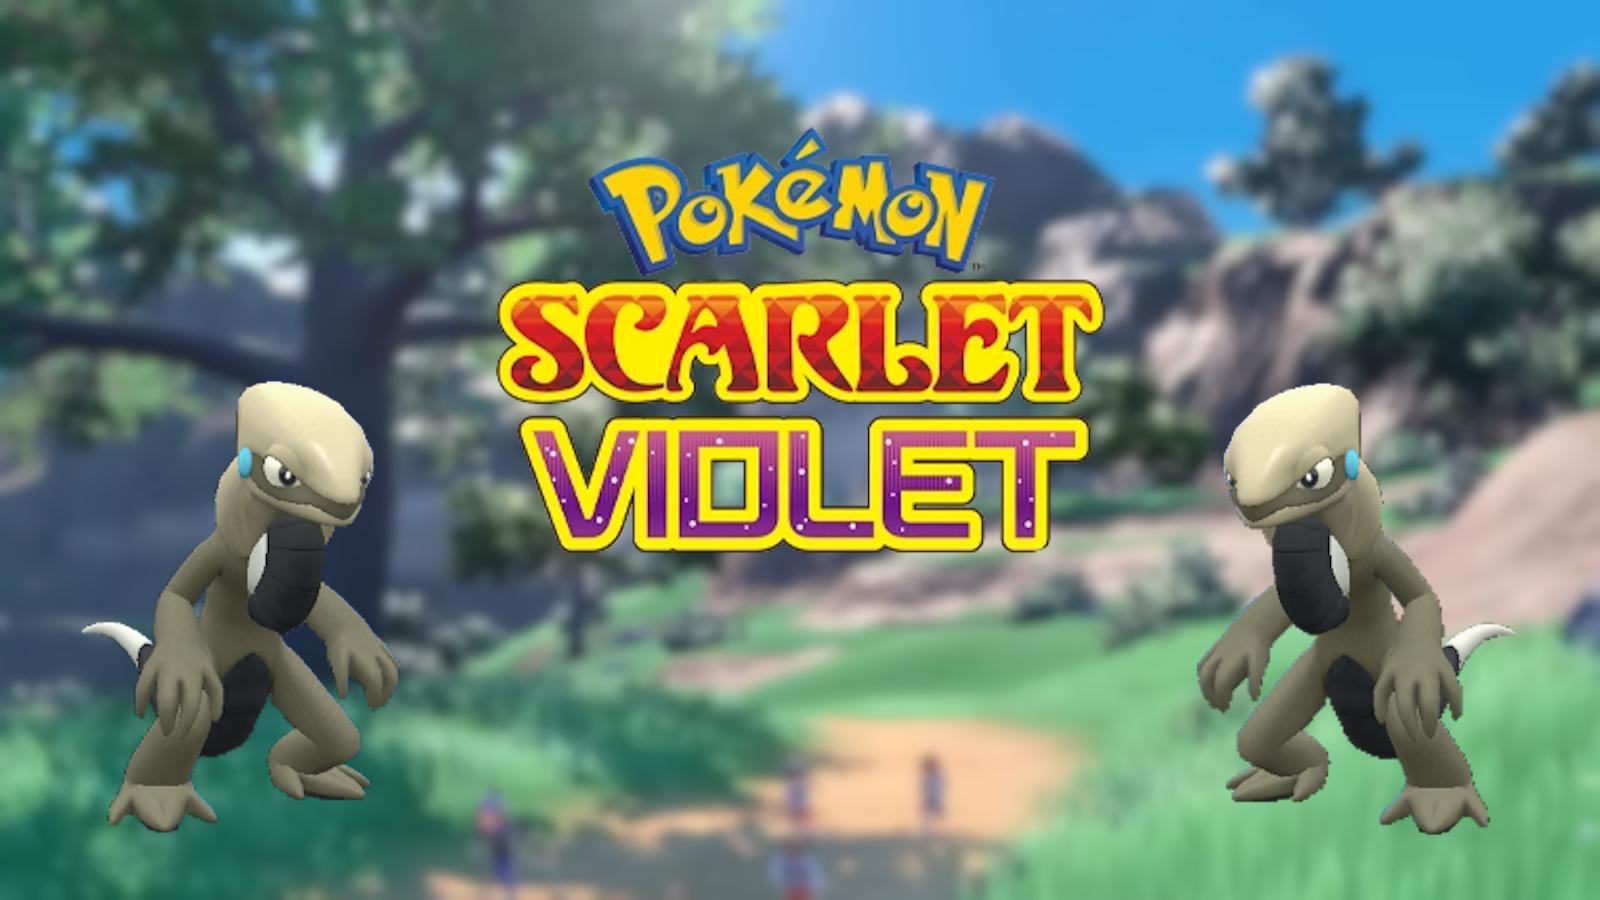 Pokémon Scarlet & Violet but it's on PC 